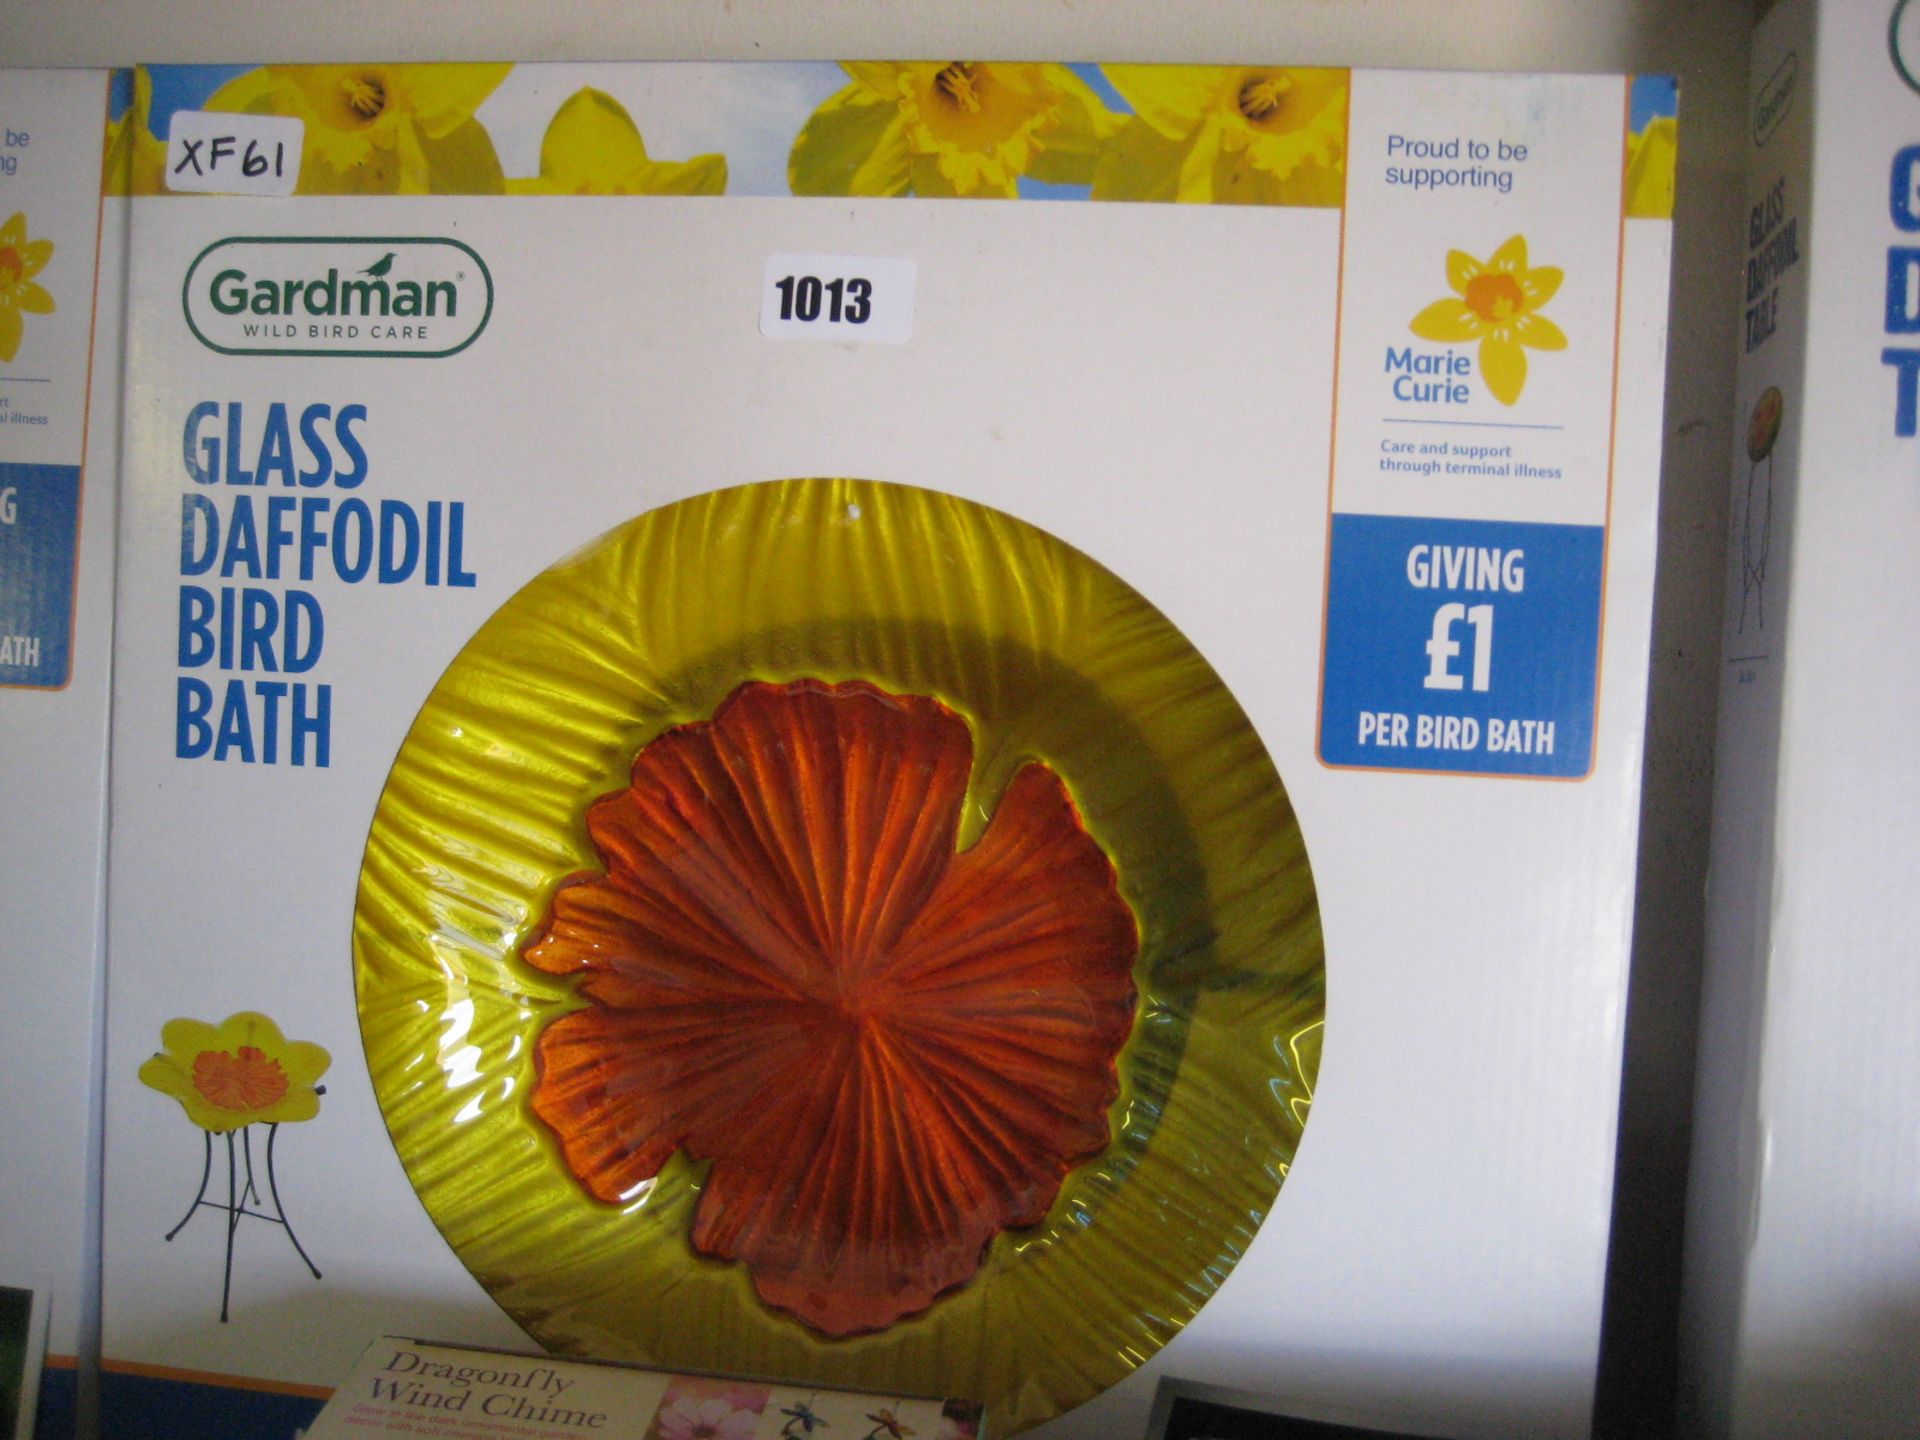 Boxed glass daffodil bird bath